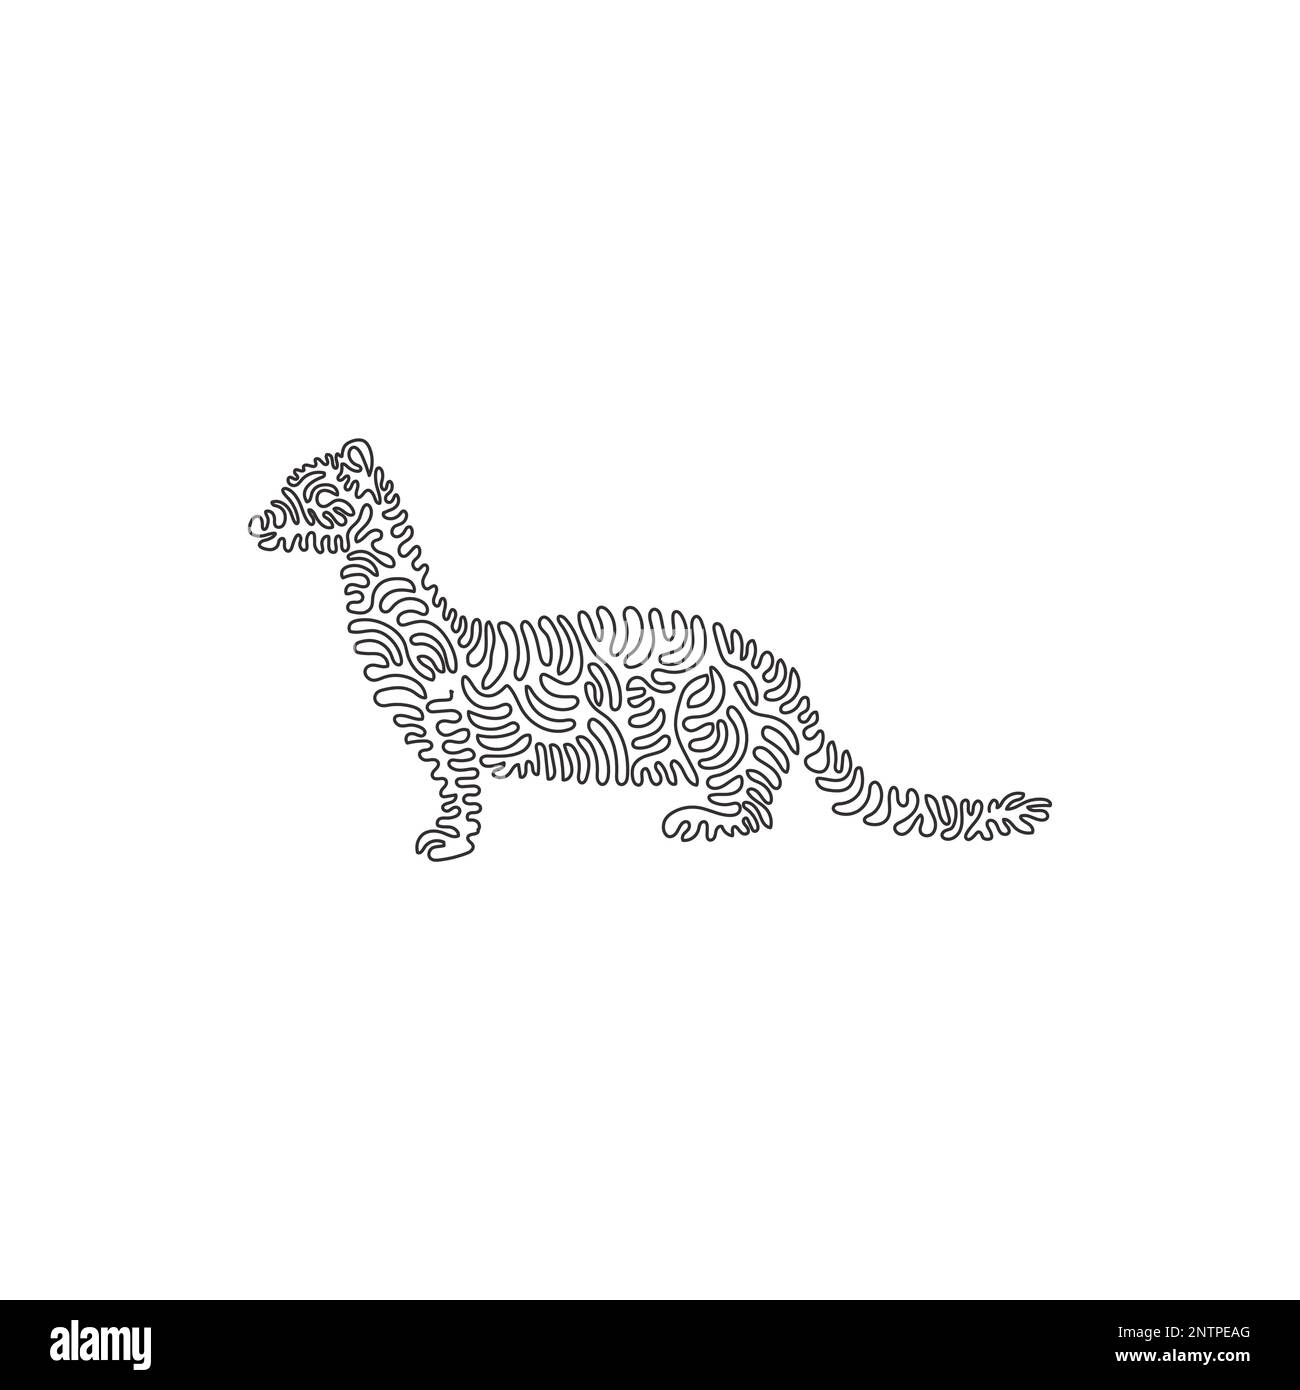 Un seul dessin d'une ligne de weasel agressif prédateurs résumé art. Dessin de ligne continue graphique dessin illustration vectorielle de mammifères carnivores Illustration de Vecteur